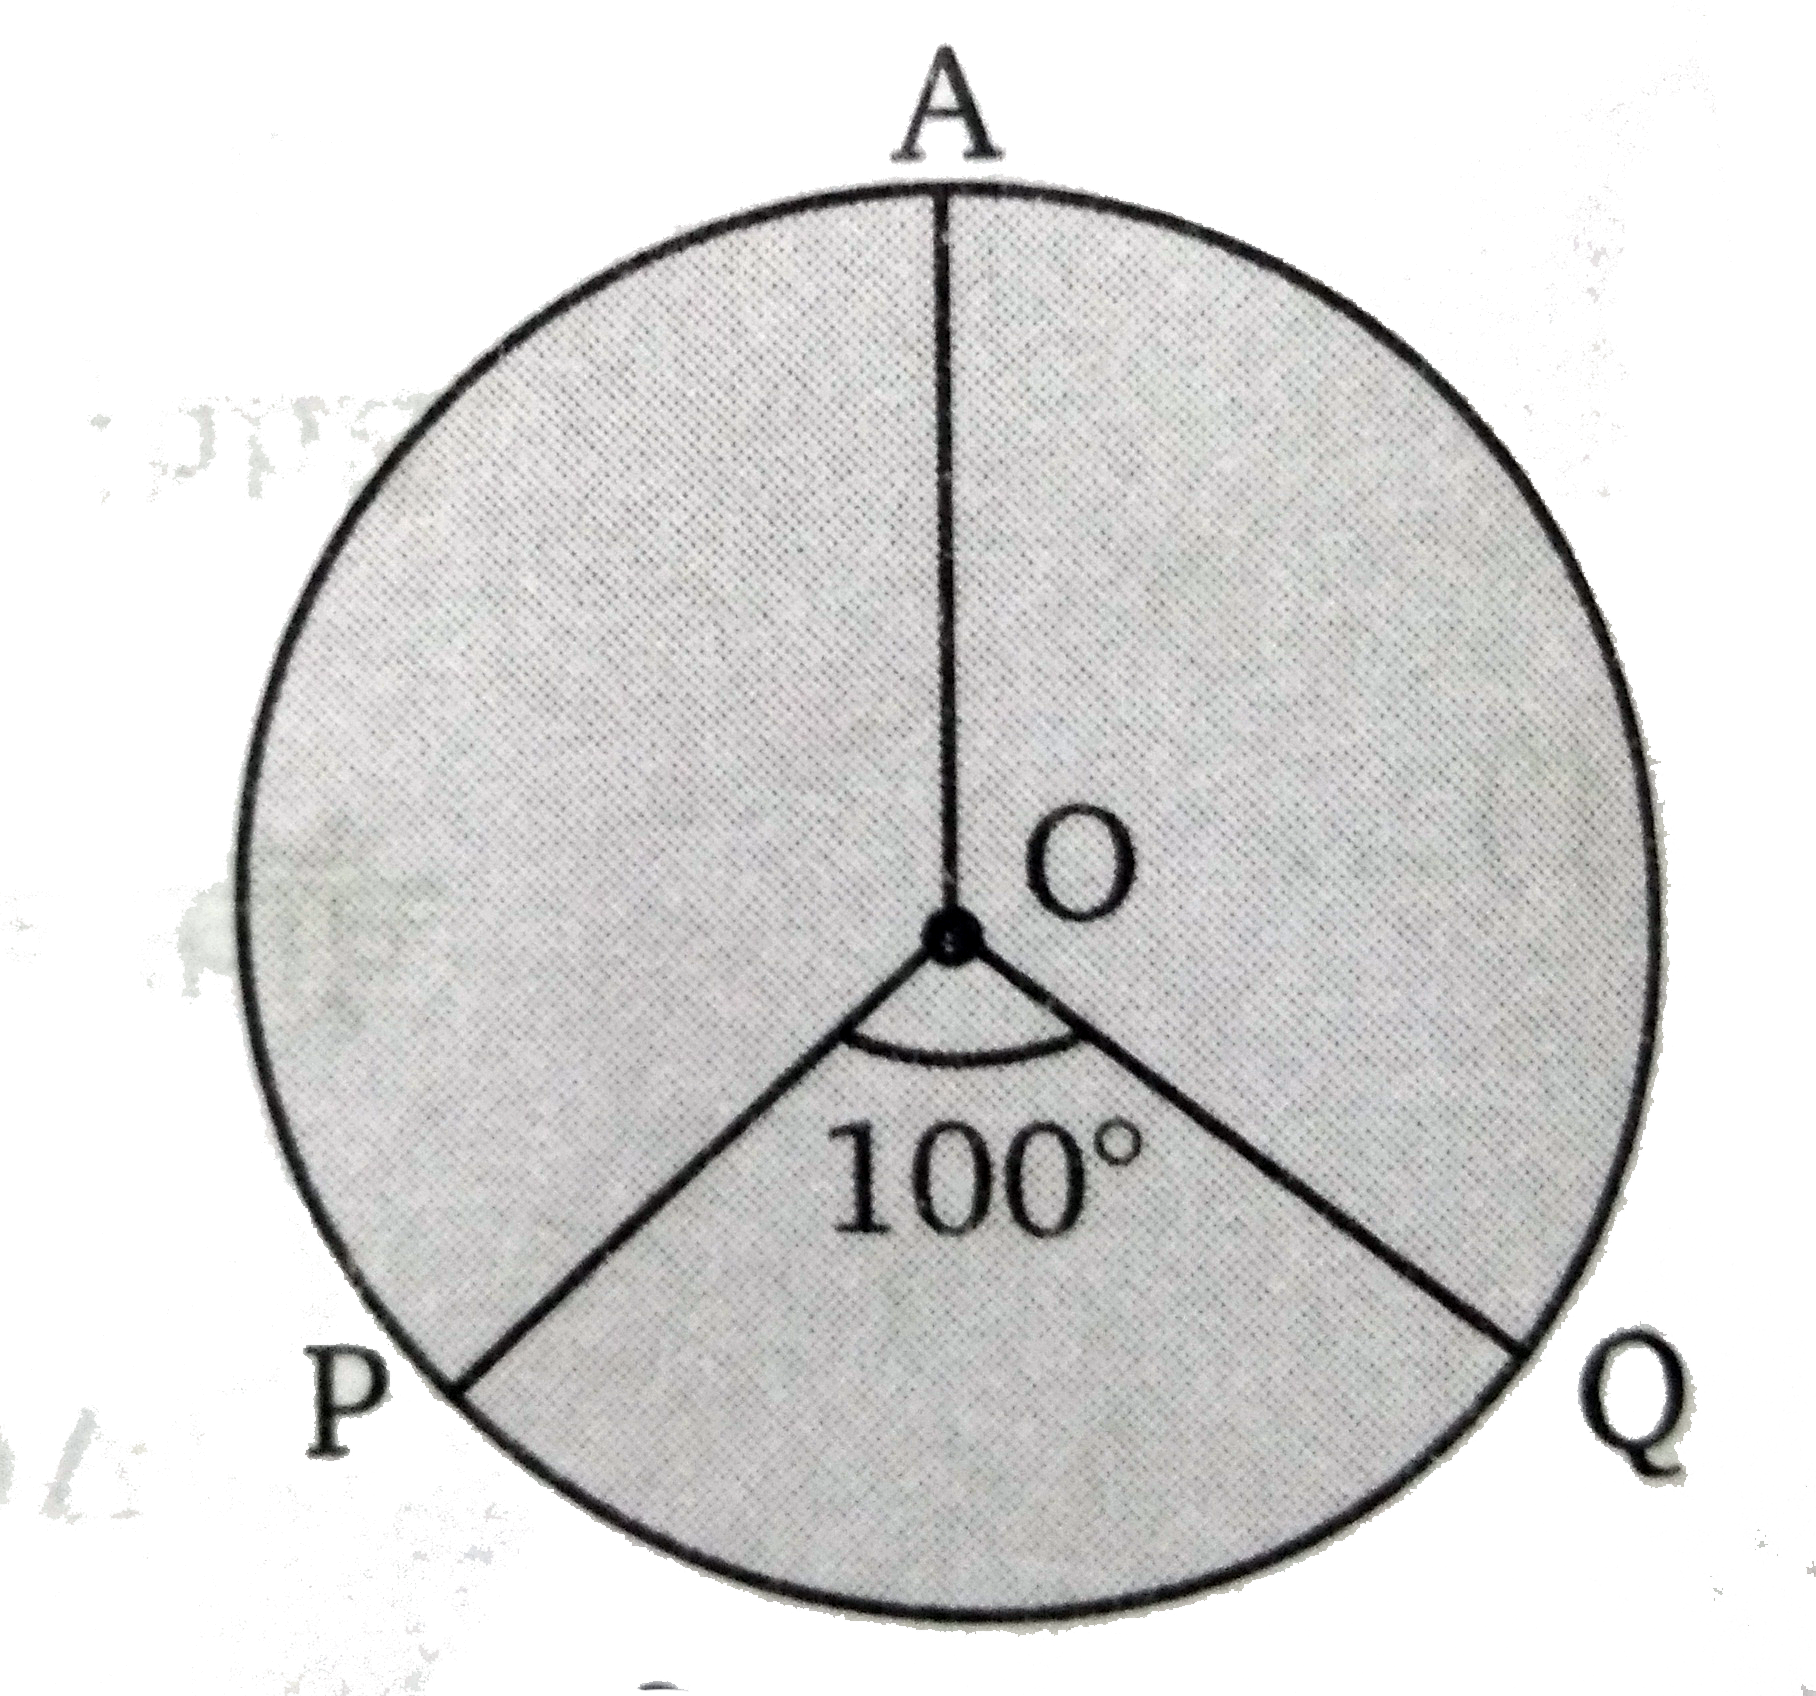 संलग्न चित्र में वृत्त  C (O , r ) की लघु चाप PQ की अंशमाप  100 ^(@ ) है, दीर्घ चाप की रेडियन माप ज्ञात कीजिए ।